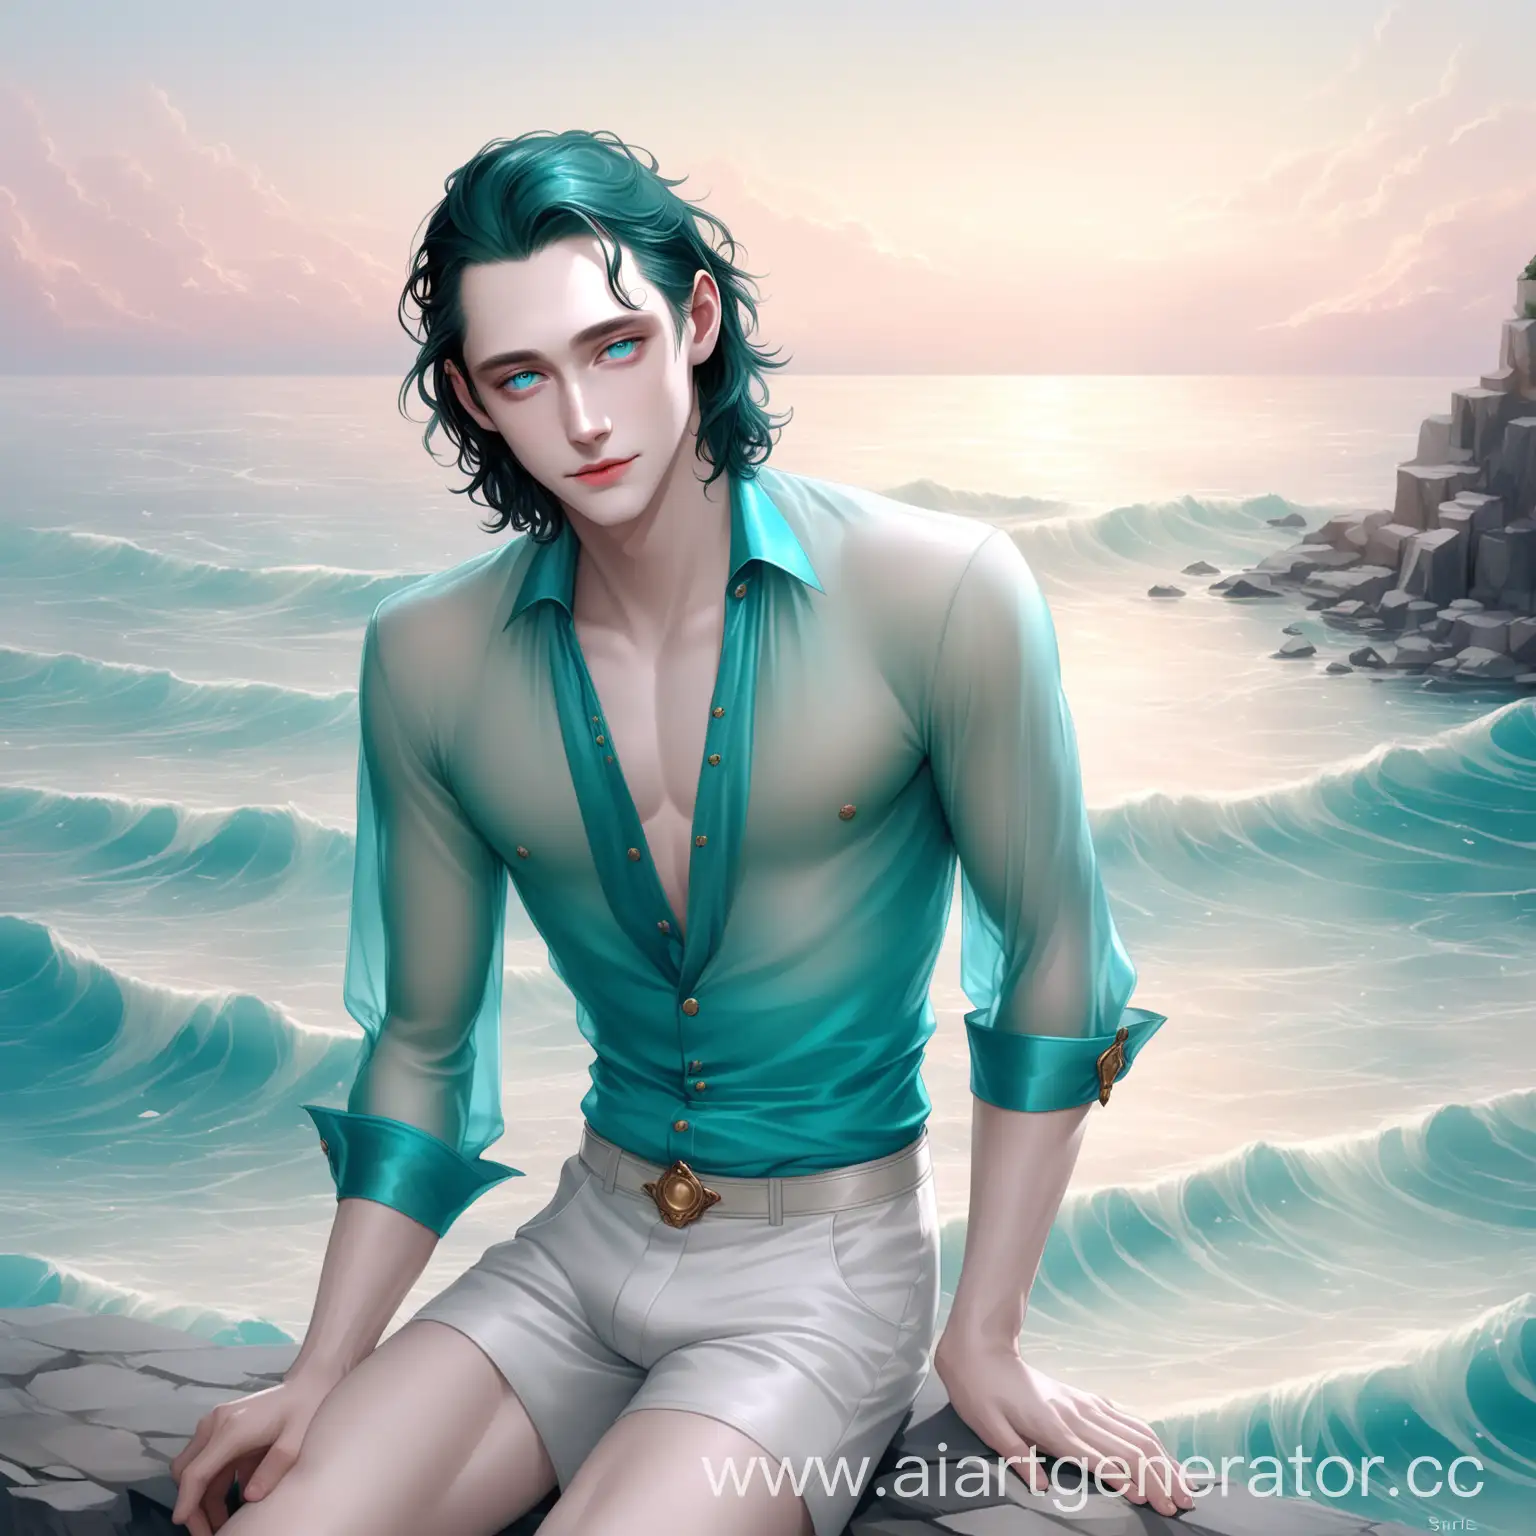 Elegant-Loki-Melancholic-Man-in-Flowing-Turquoise-Shirt